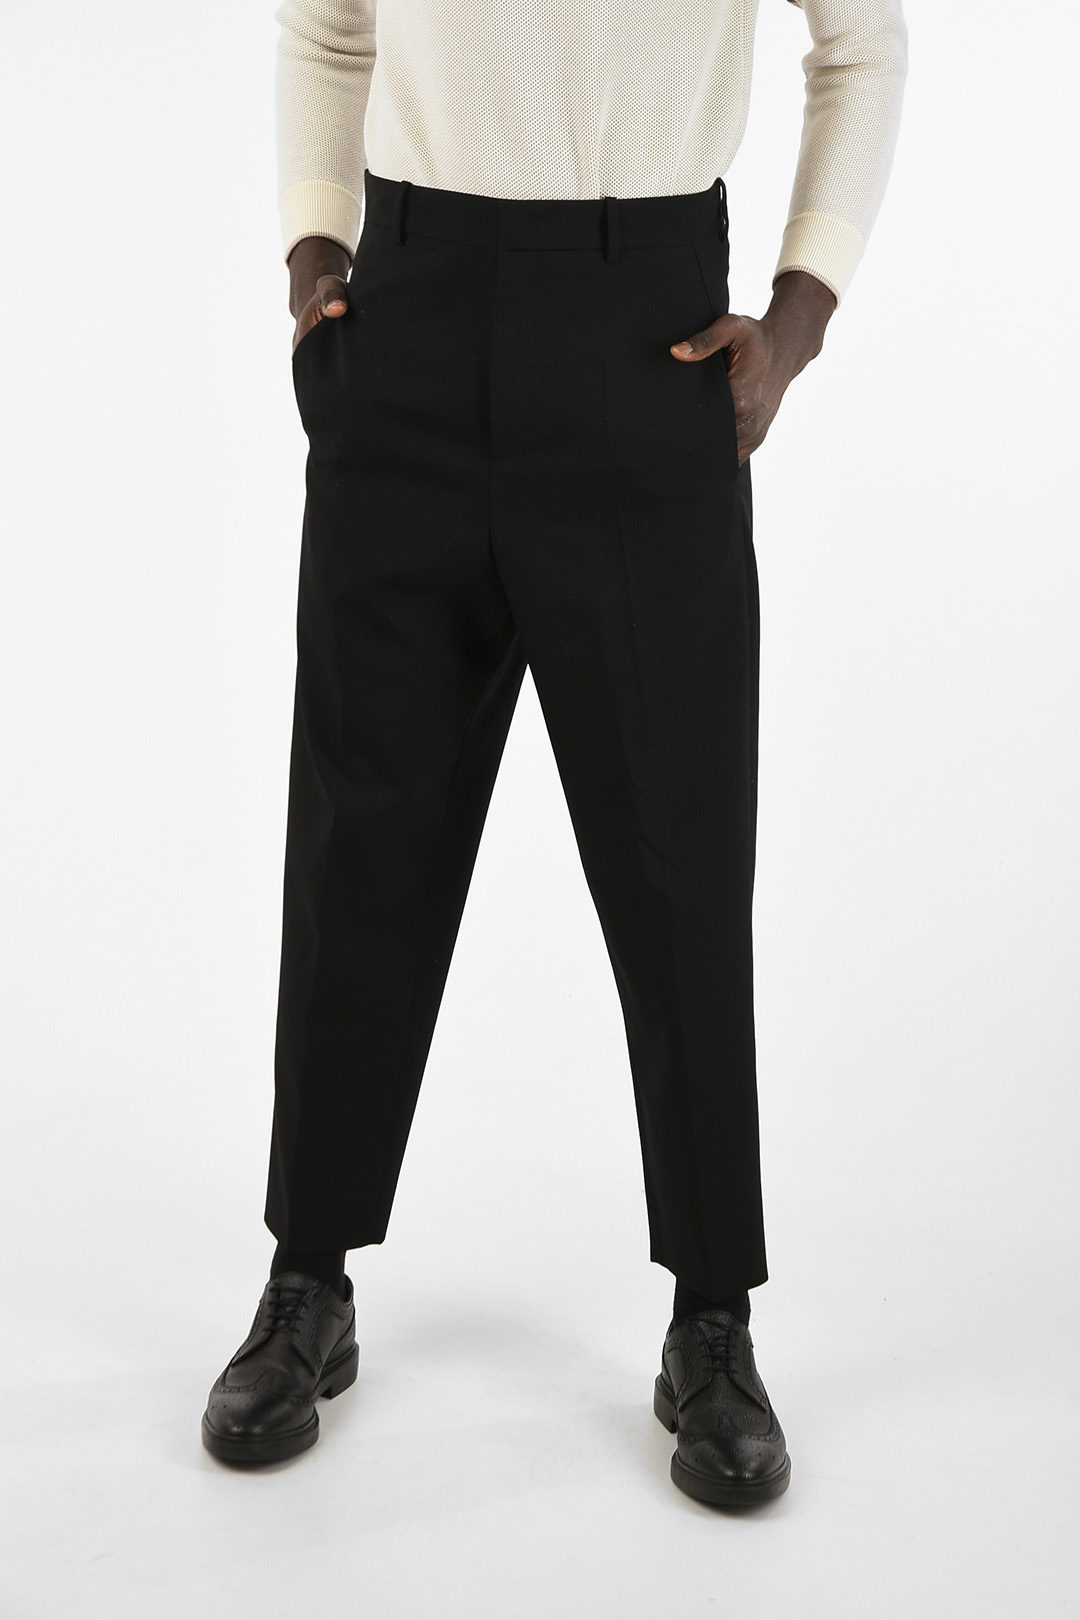 Jil Sander wool belt loops trousers men - Glamood Outlet